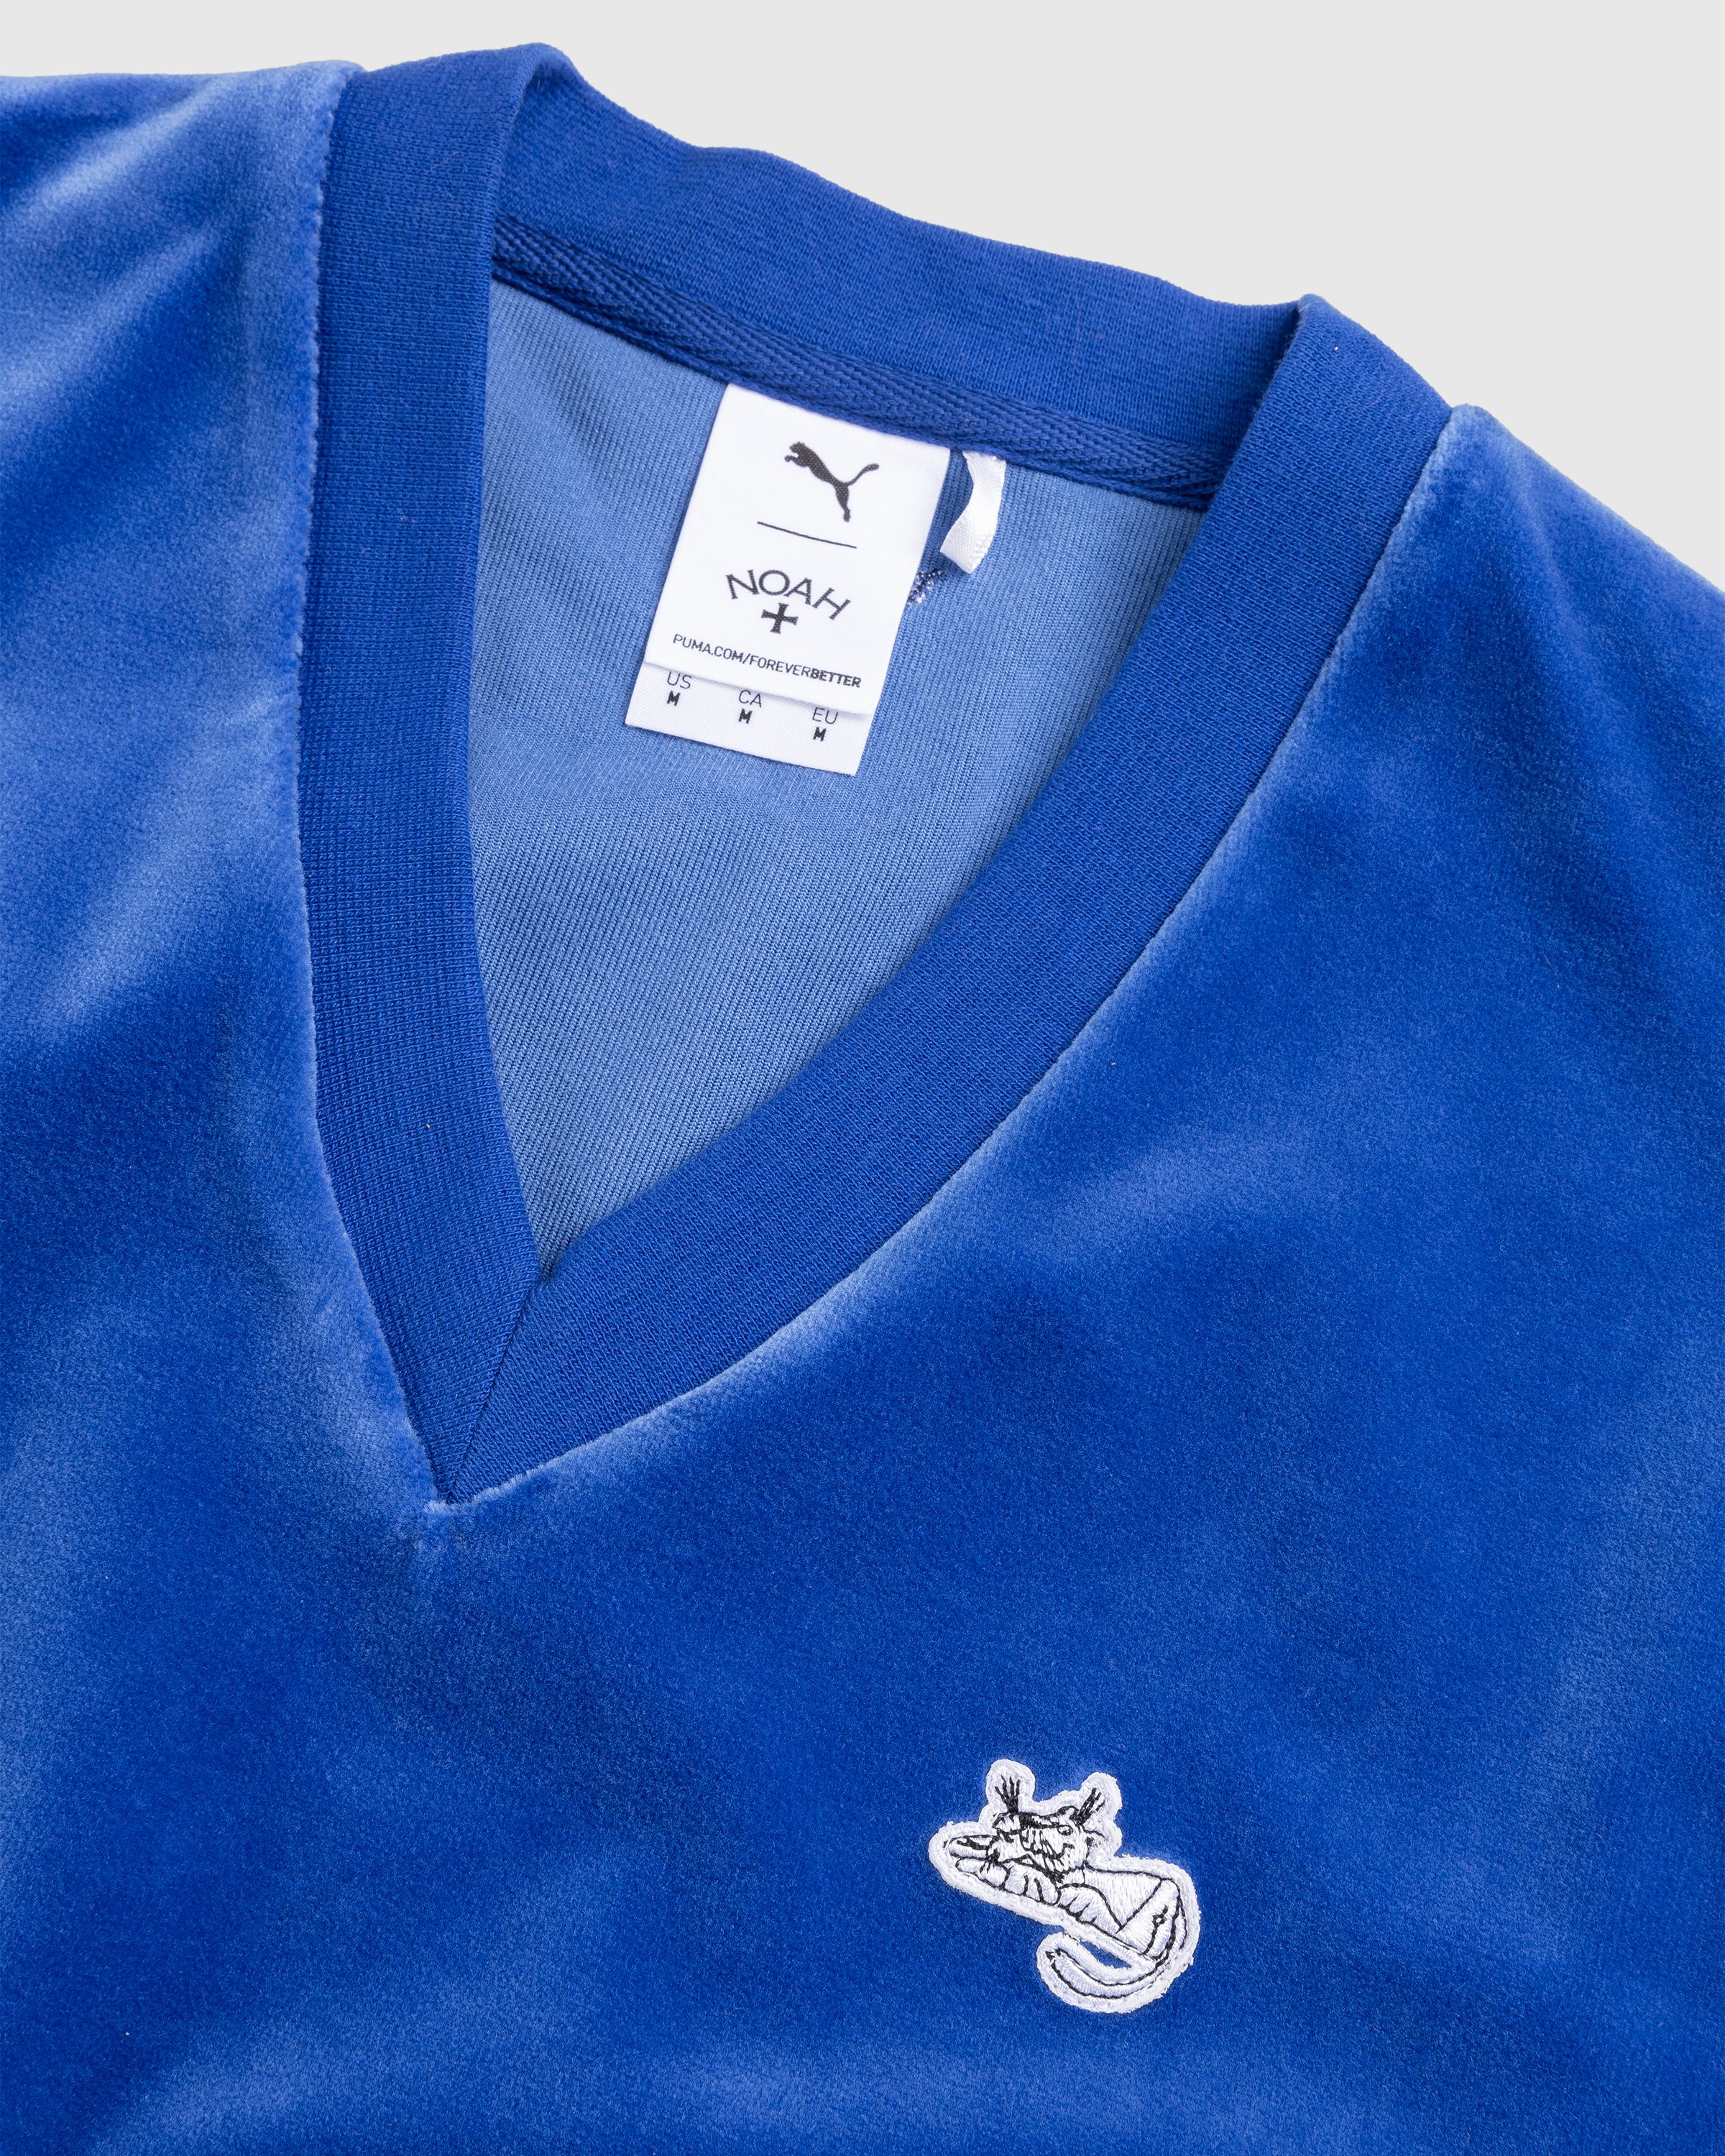 Puma x Noah - Vest Blue - Clothing - Blue - Image 6